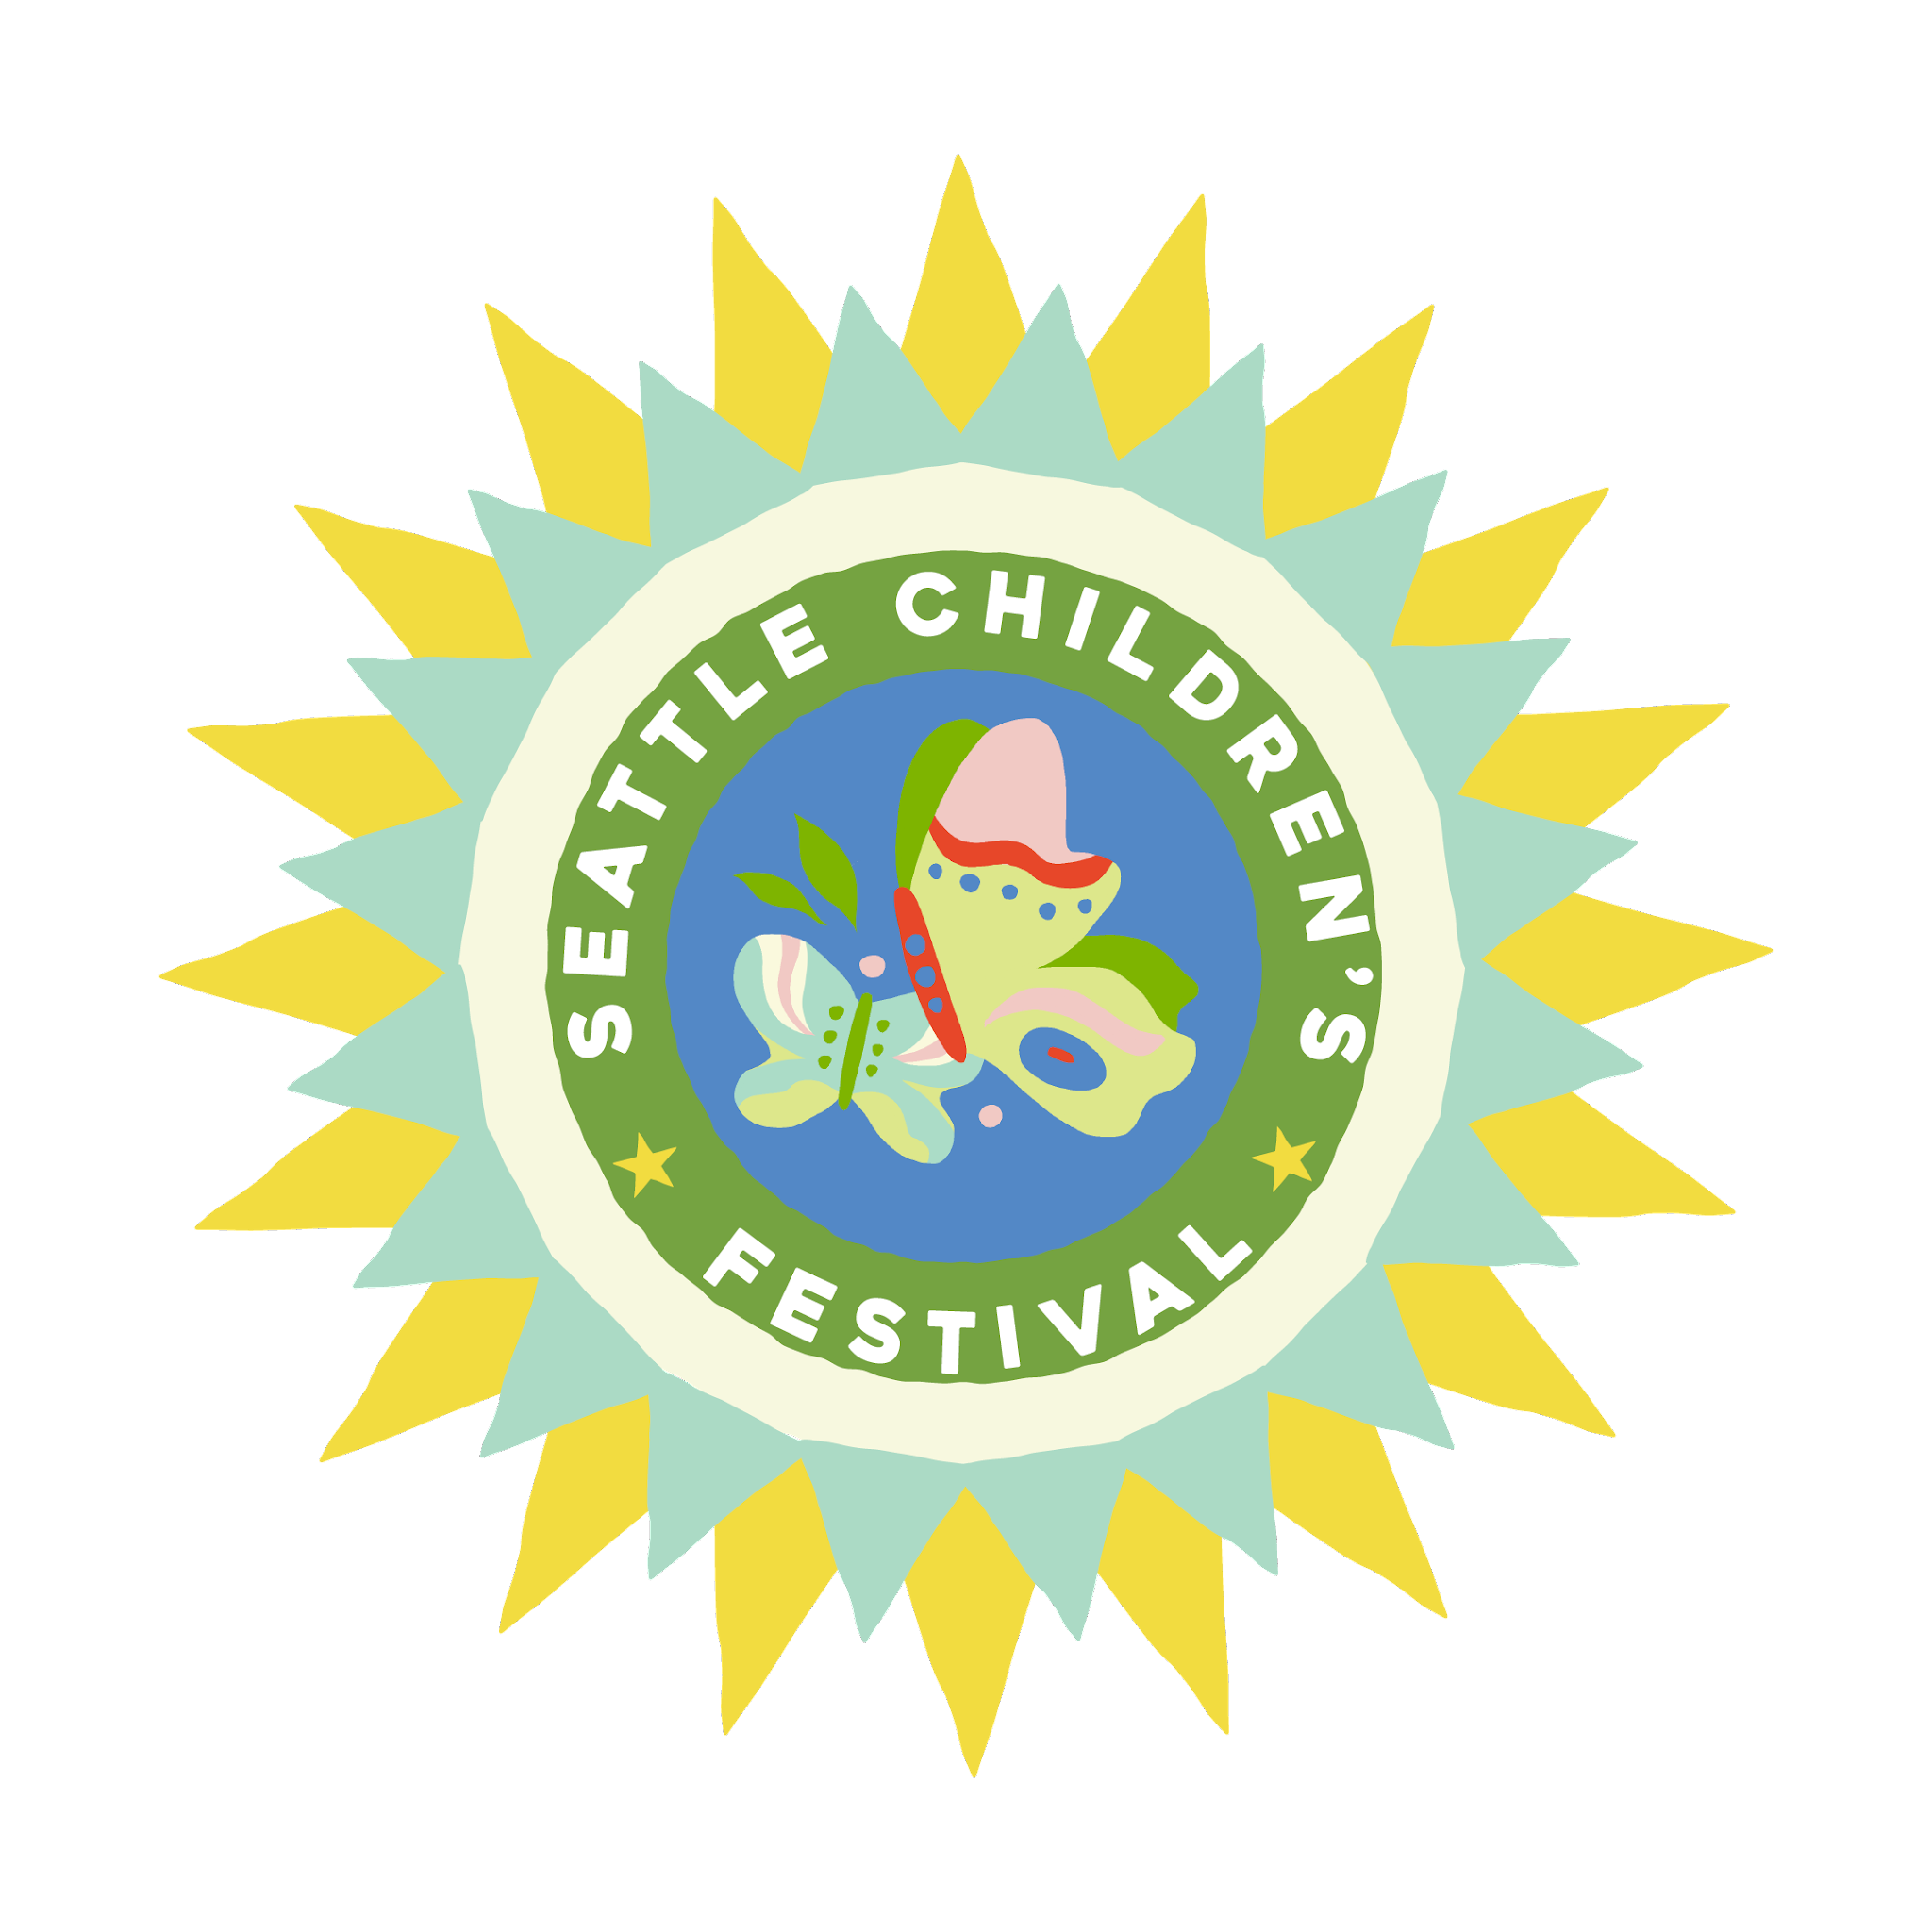 Seattle Children's Festival Volunteer Application 2022